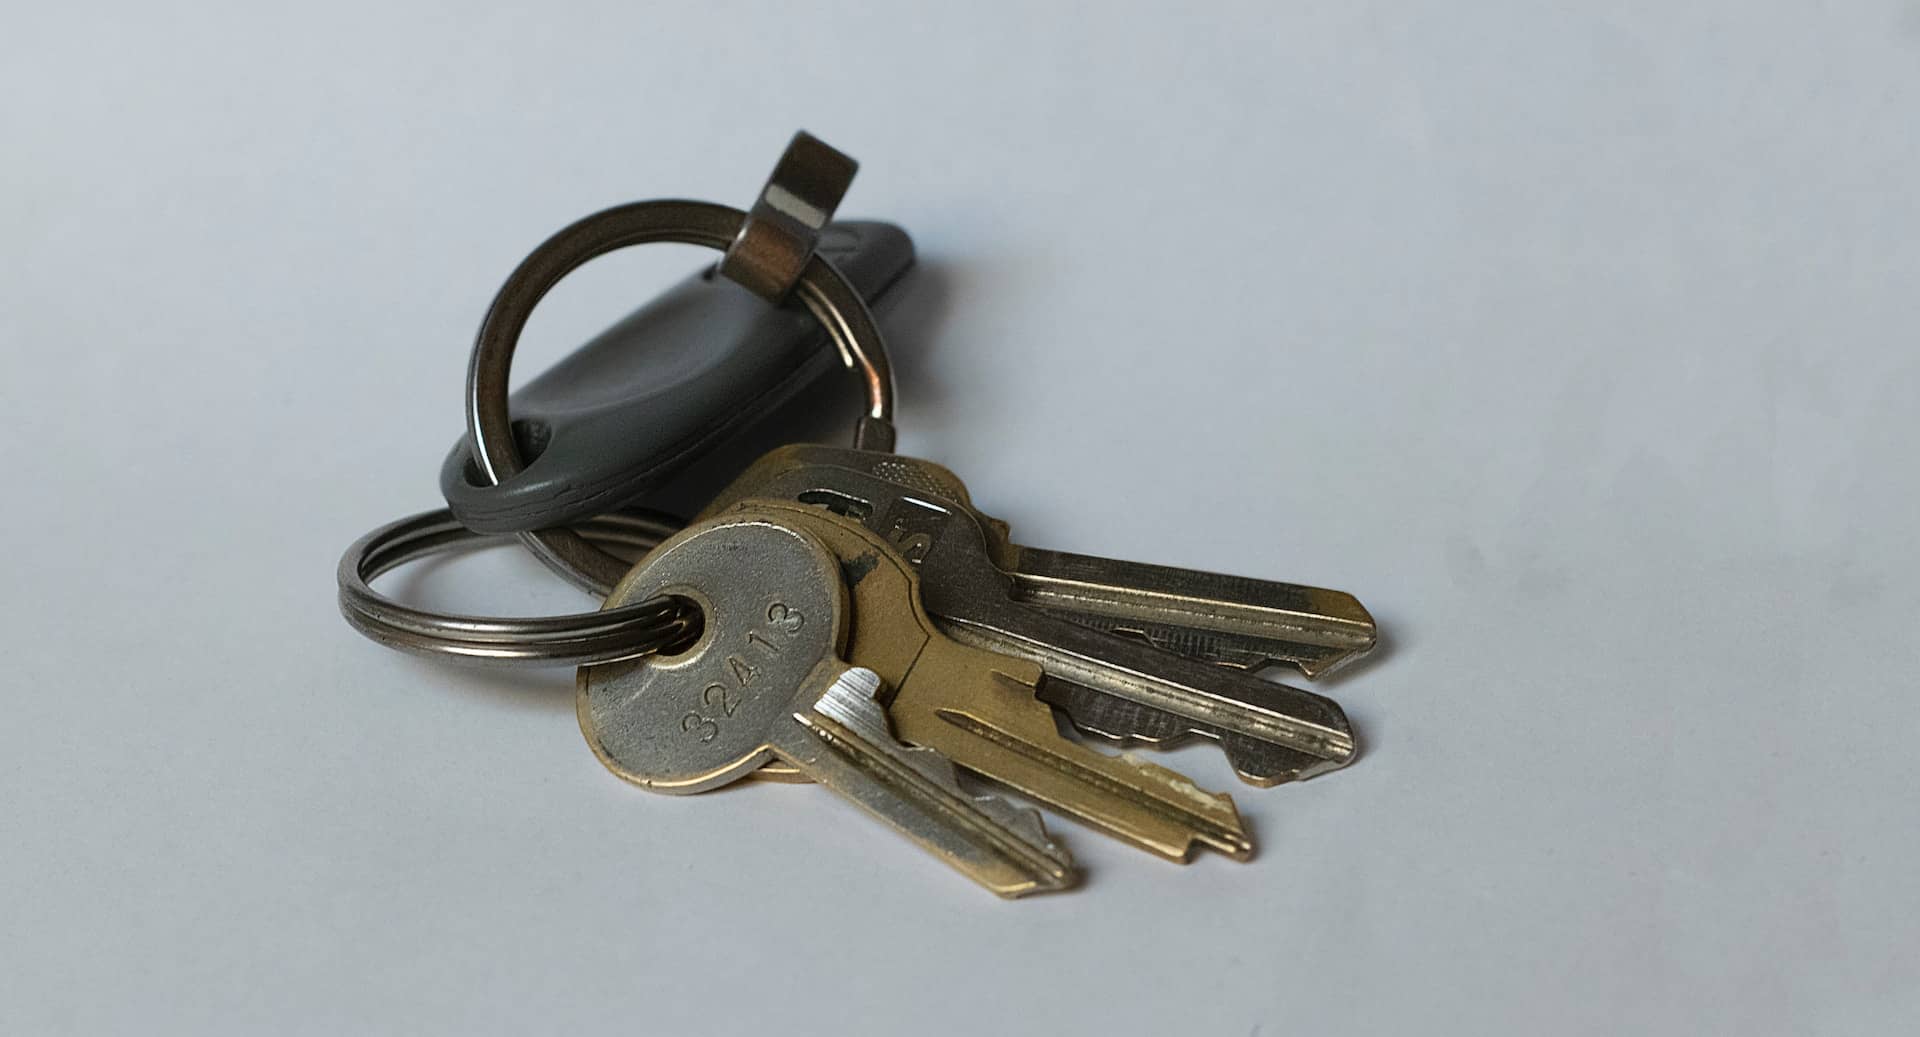 house keys on a table